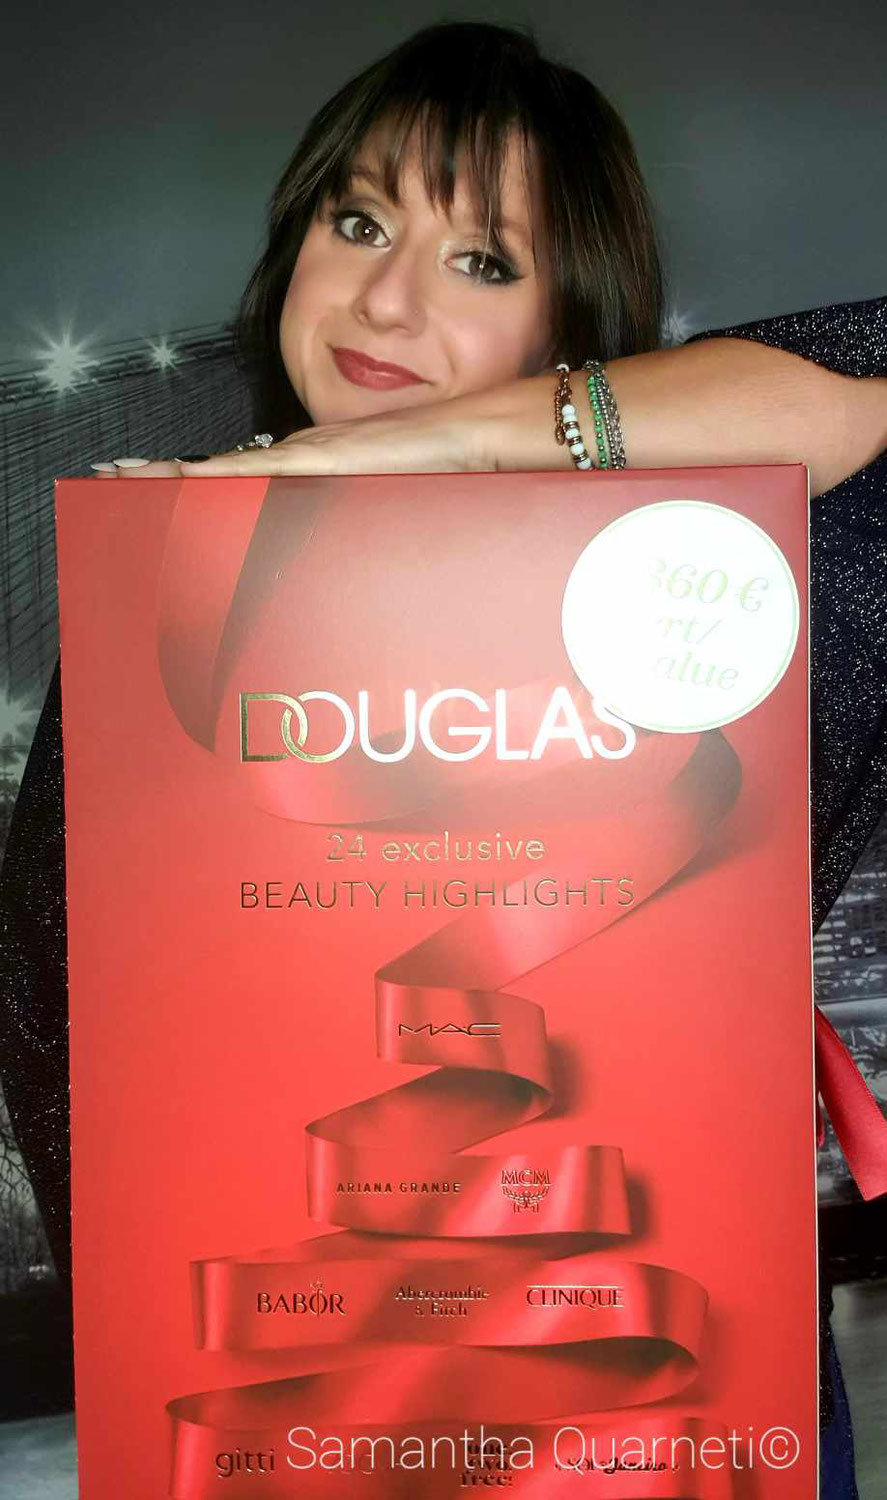 UNBOXING Douglas Calendario dell'Avvento con 24 Beauty Highlights